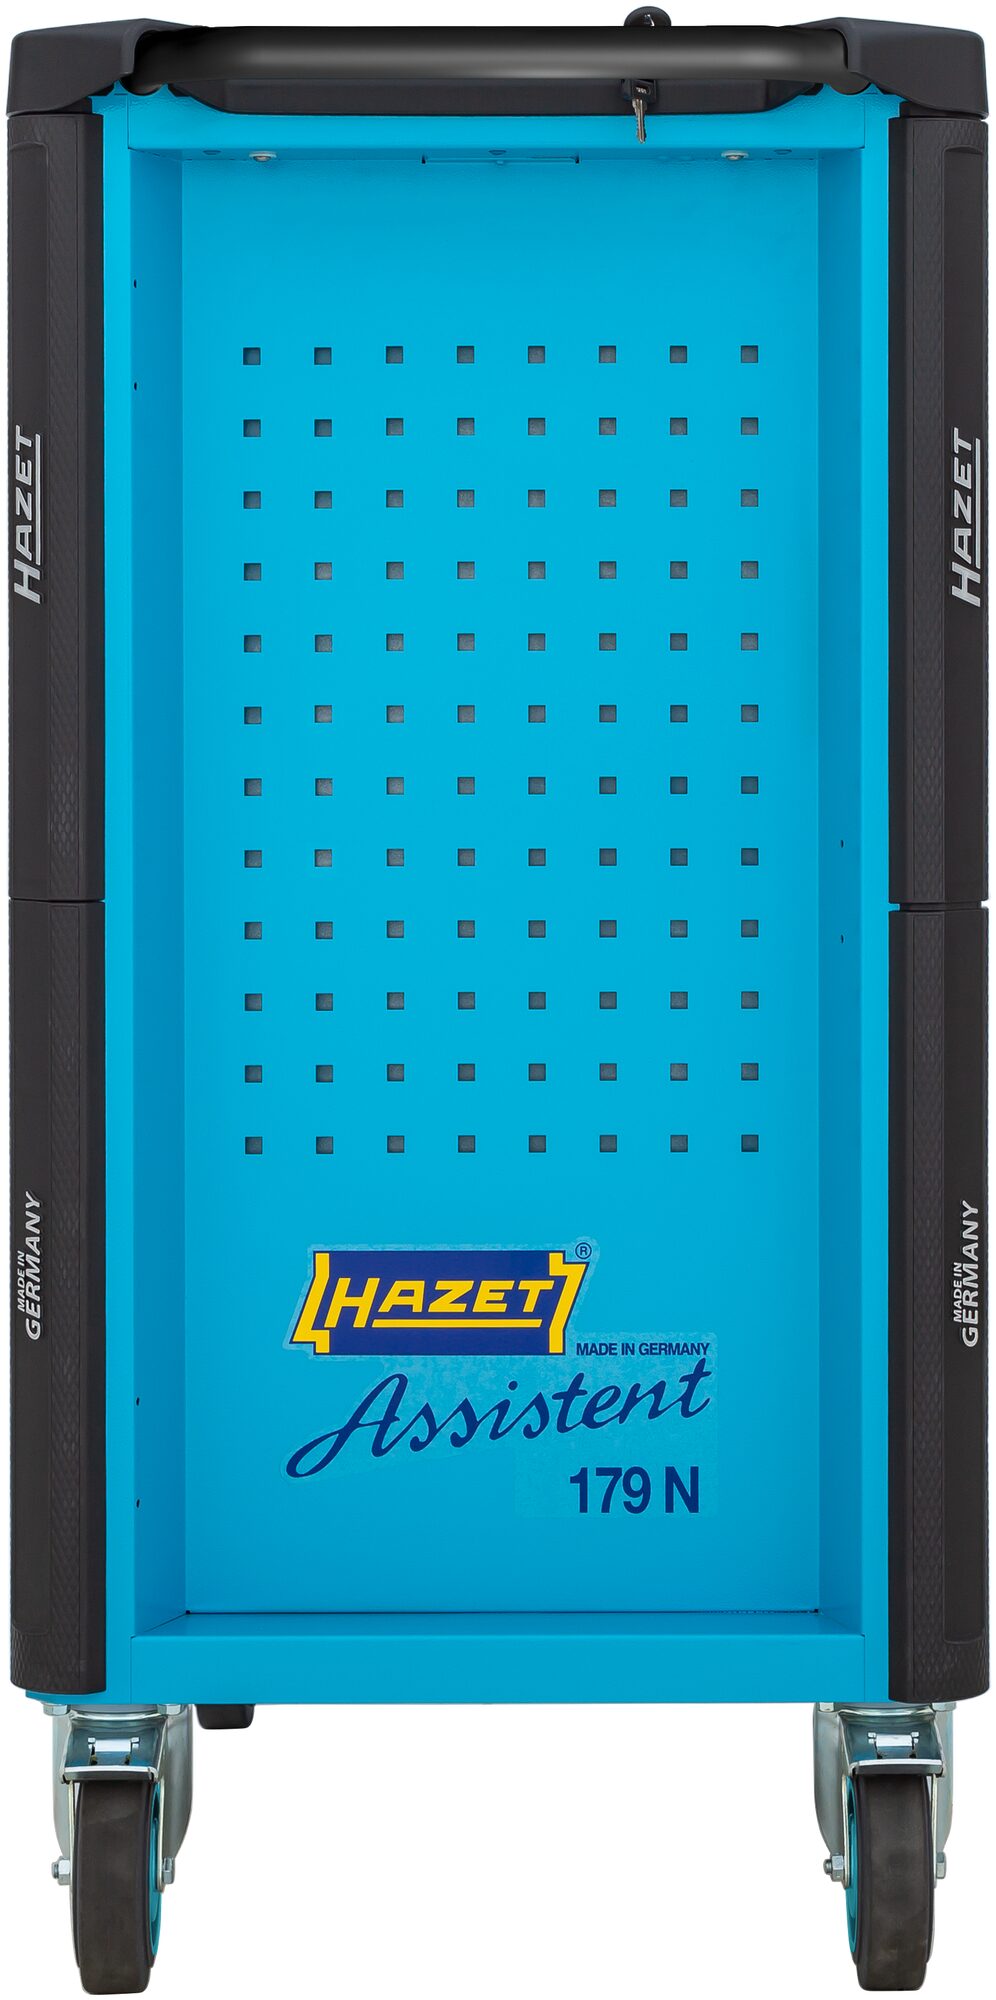 HAZET Werkstattwagen Assistent 179N-6